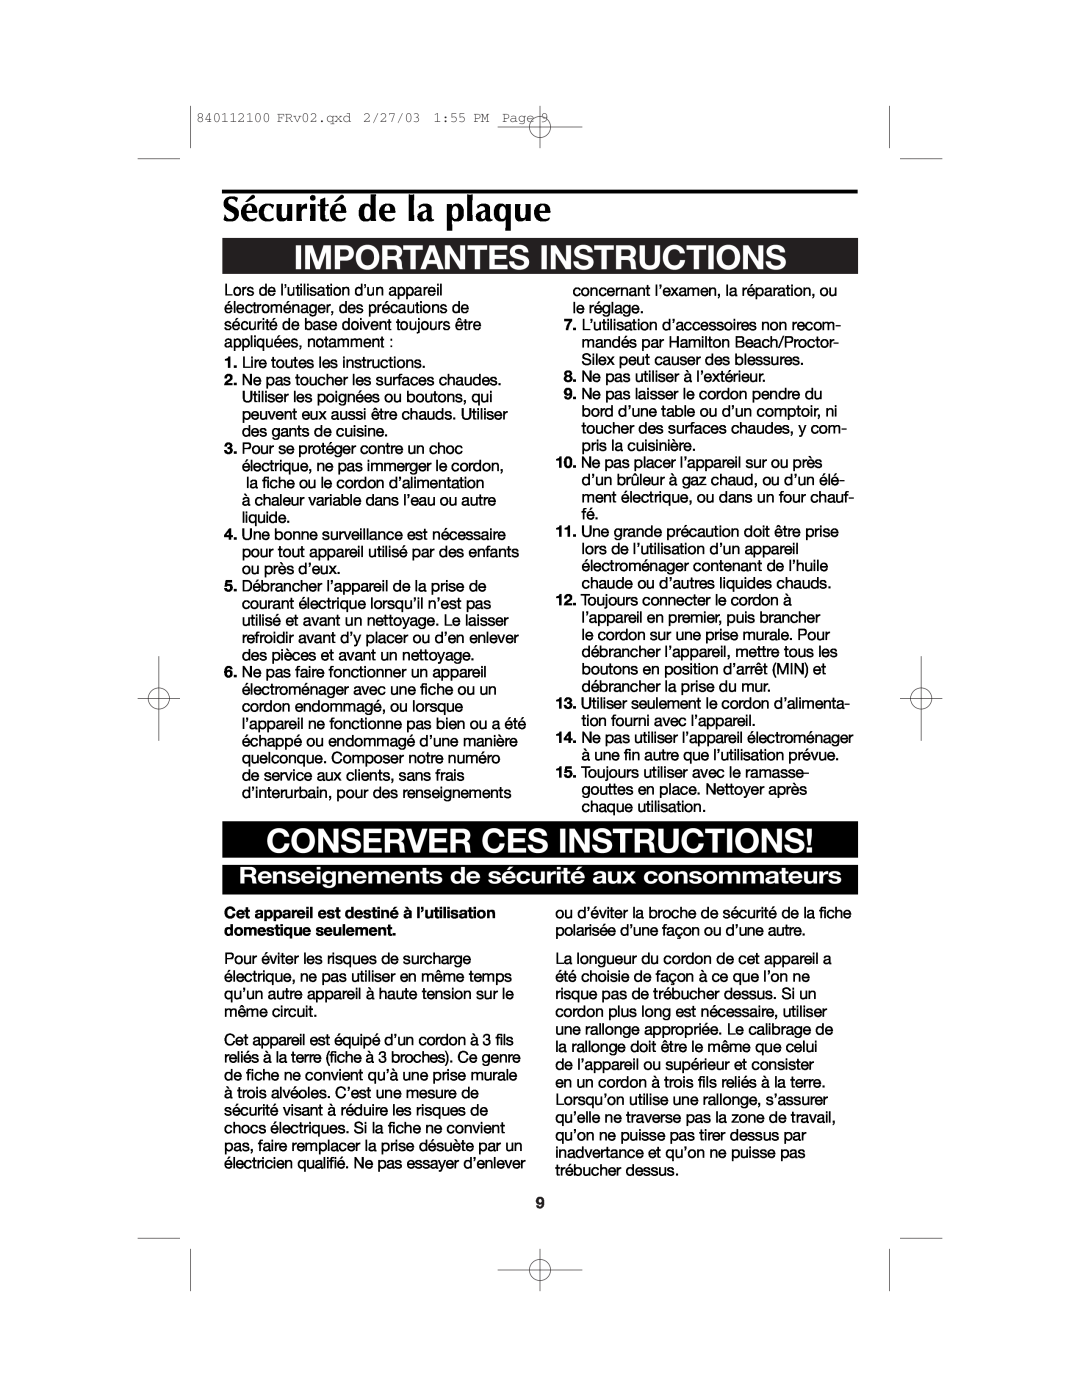 Proctor-Silex 840112100 manual Sécurité de la plaque, Importantes Instructions, Conserver Ces Instructions 